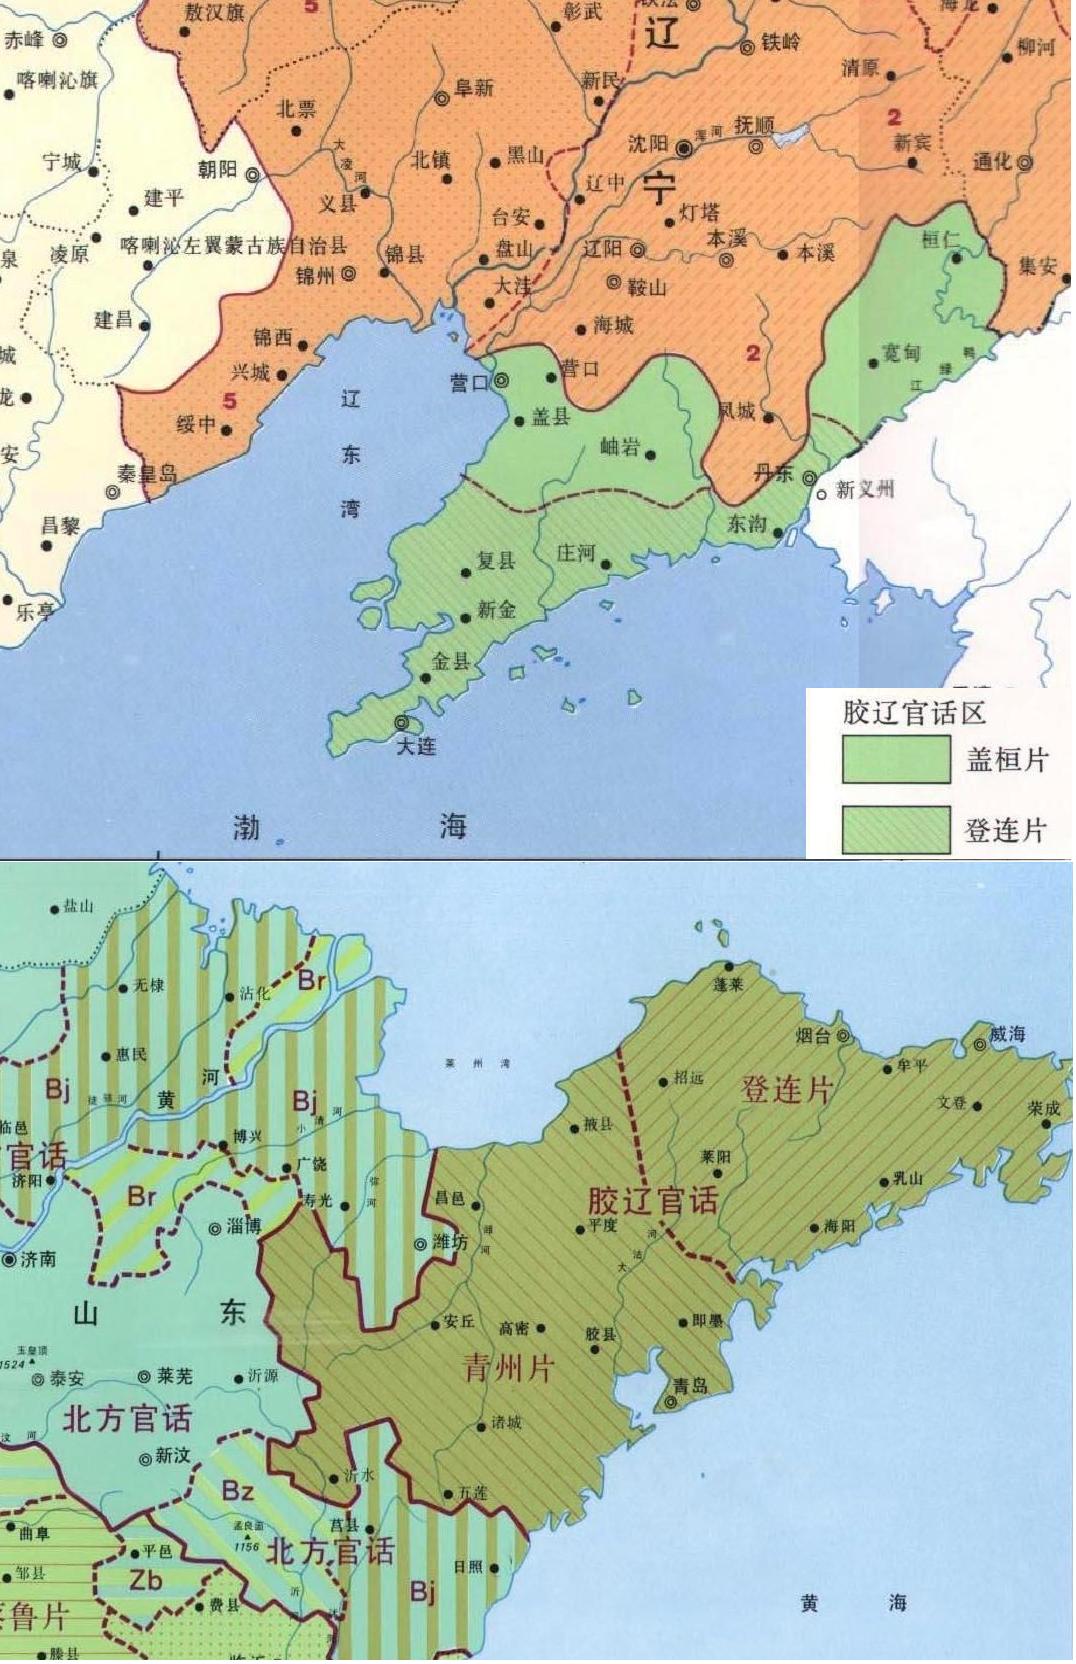 膠遼官話地圖